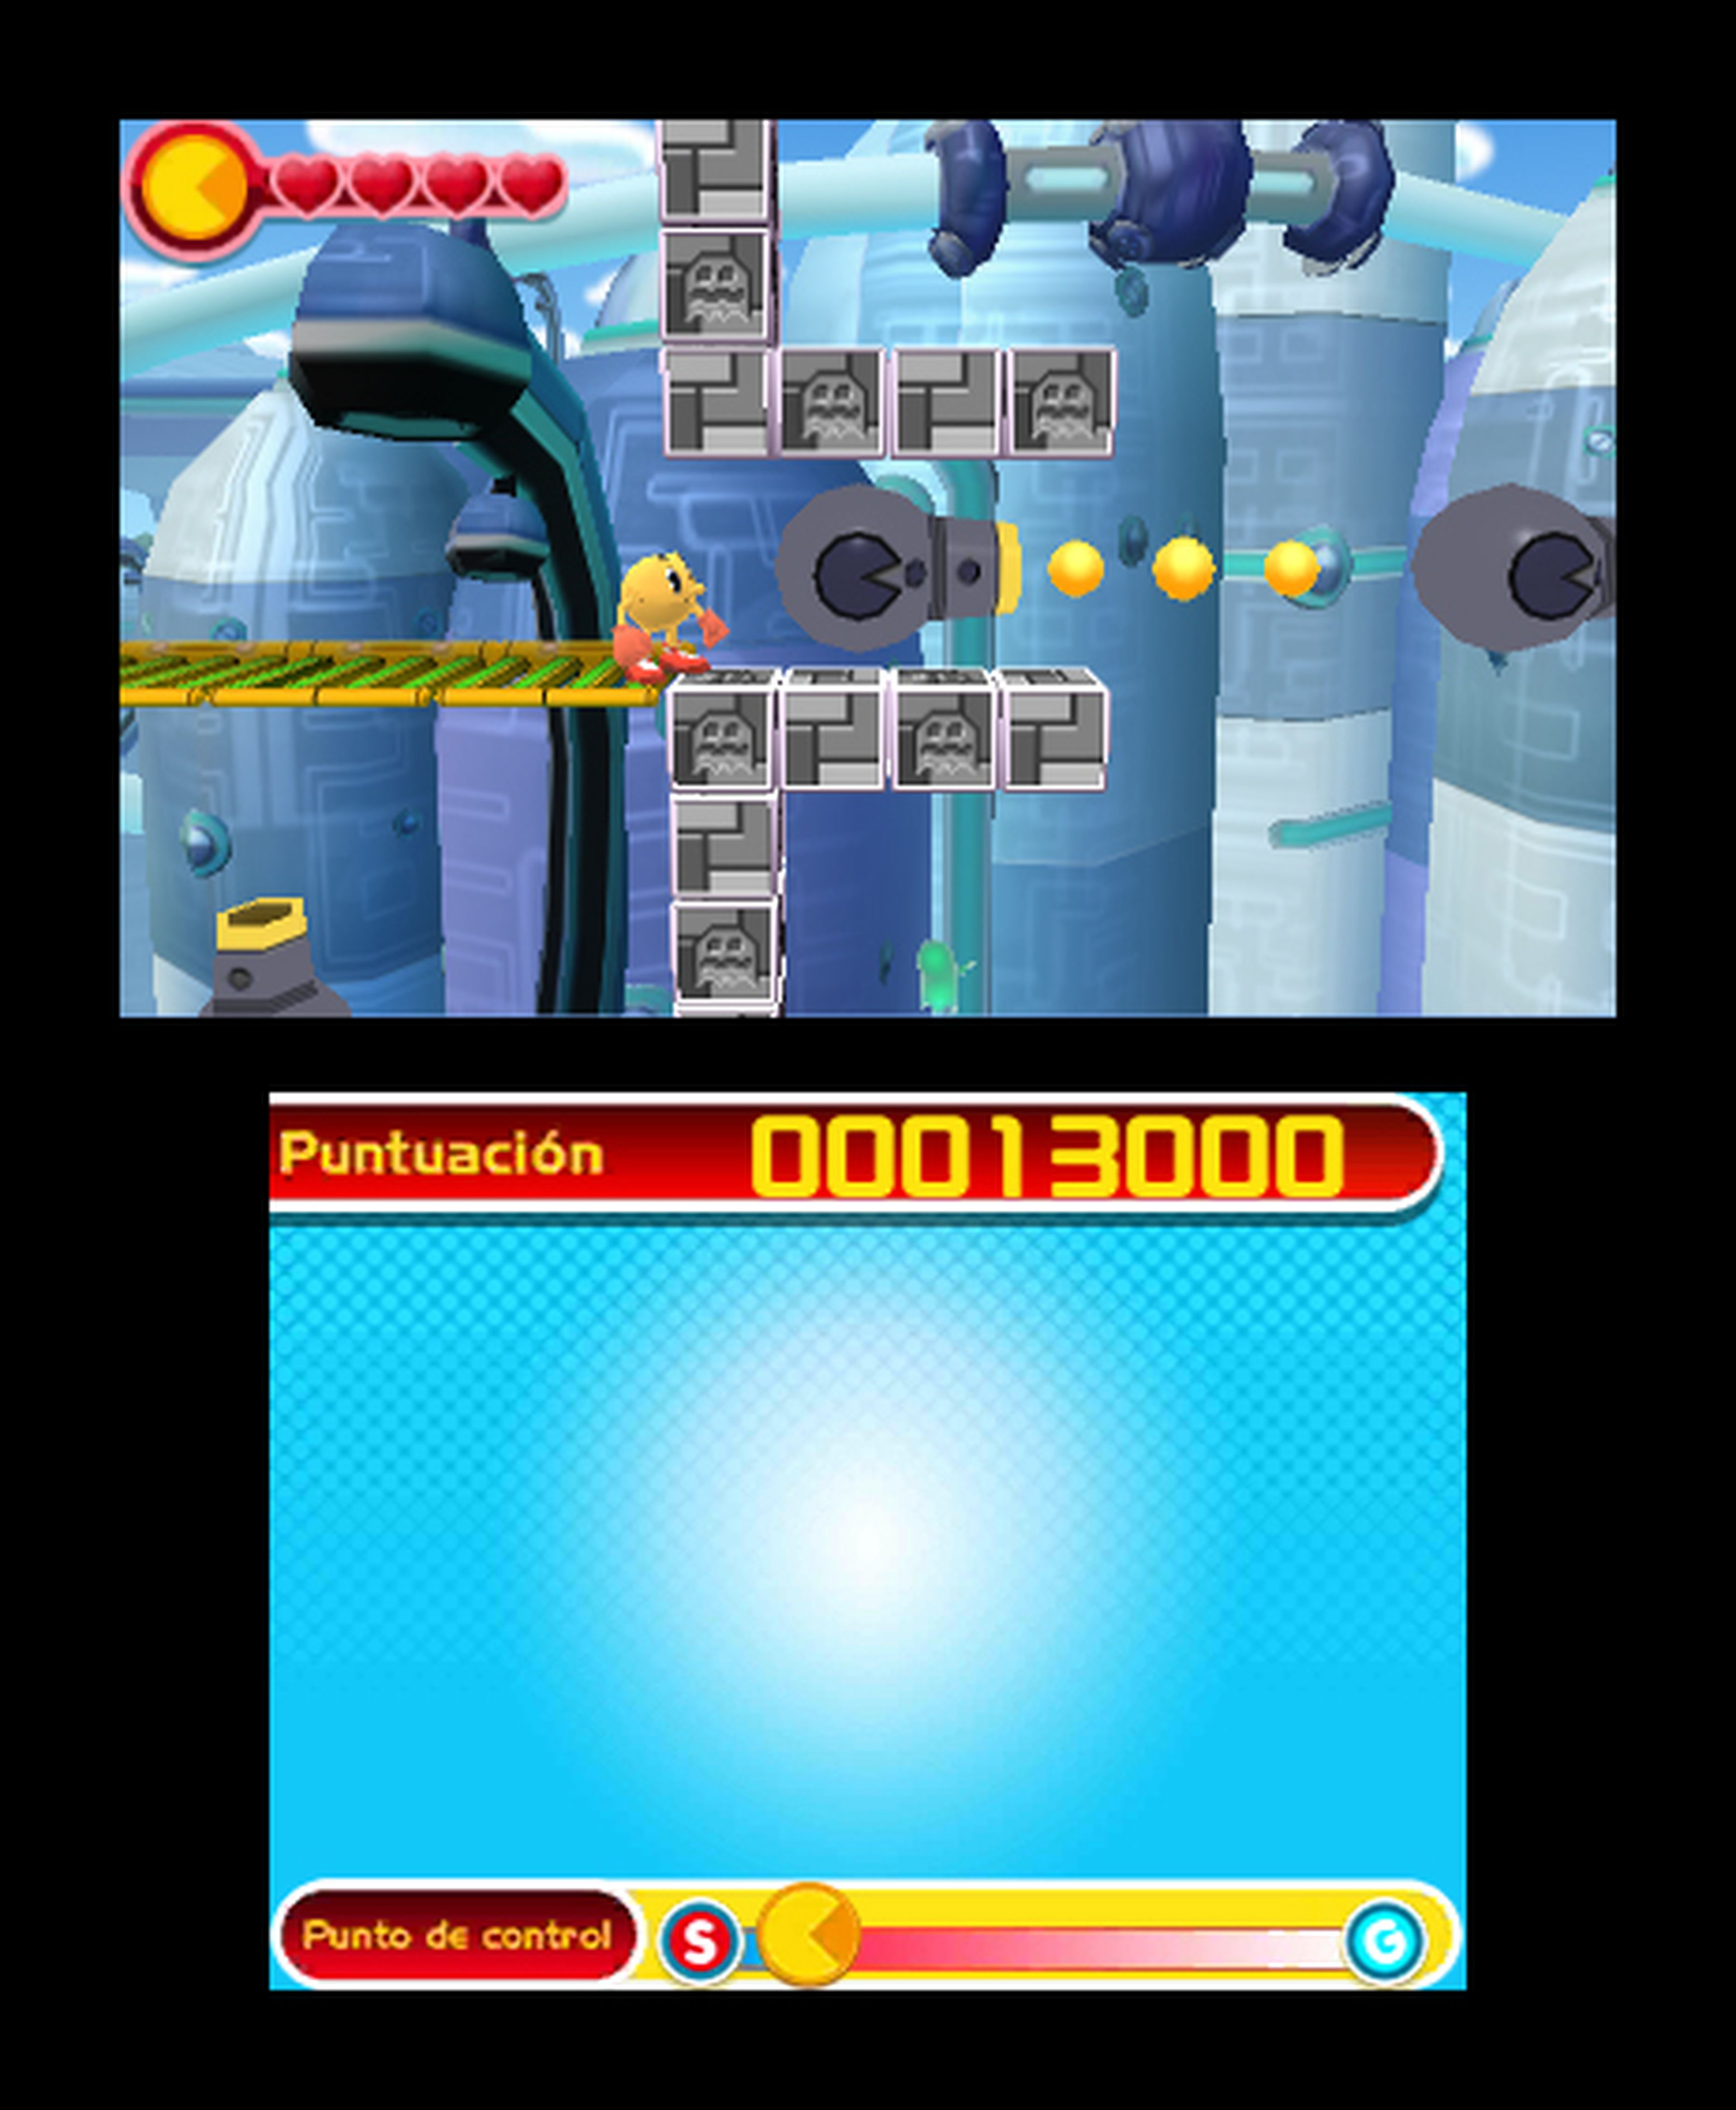 Análisis de Pac-Man y las aventuras fantasmales